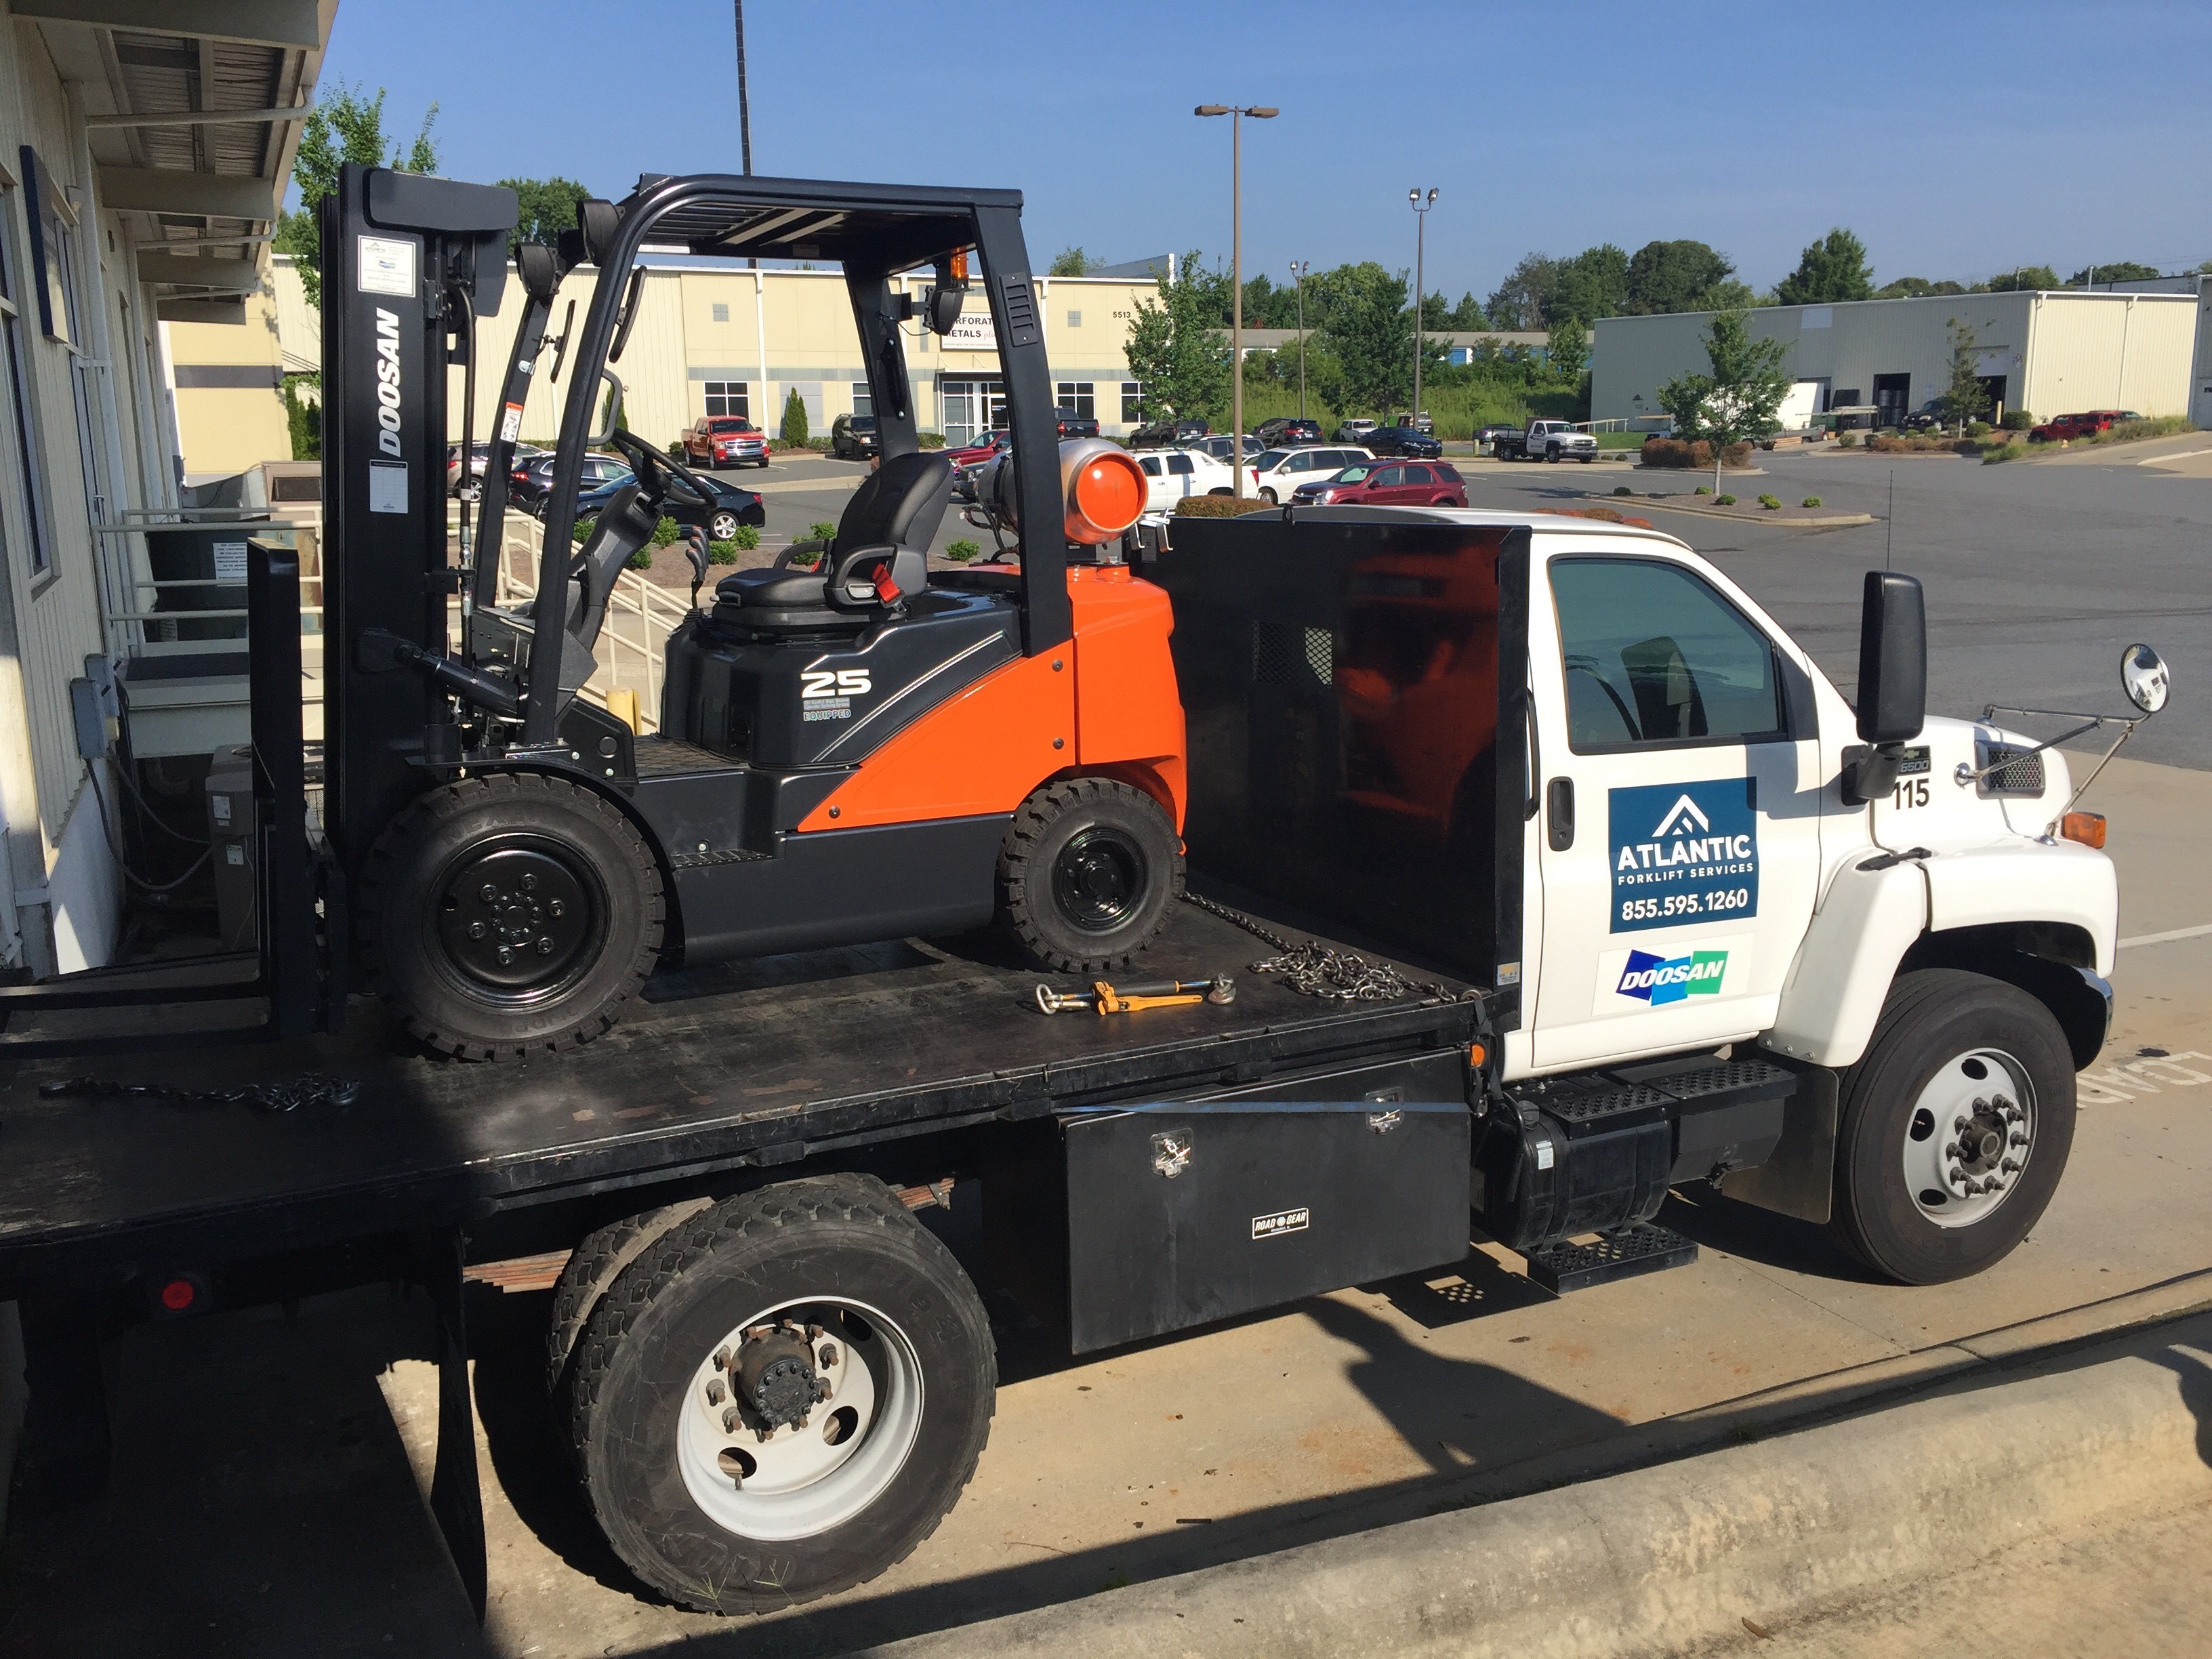 Atlantic Forklift Services Linkedin